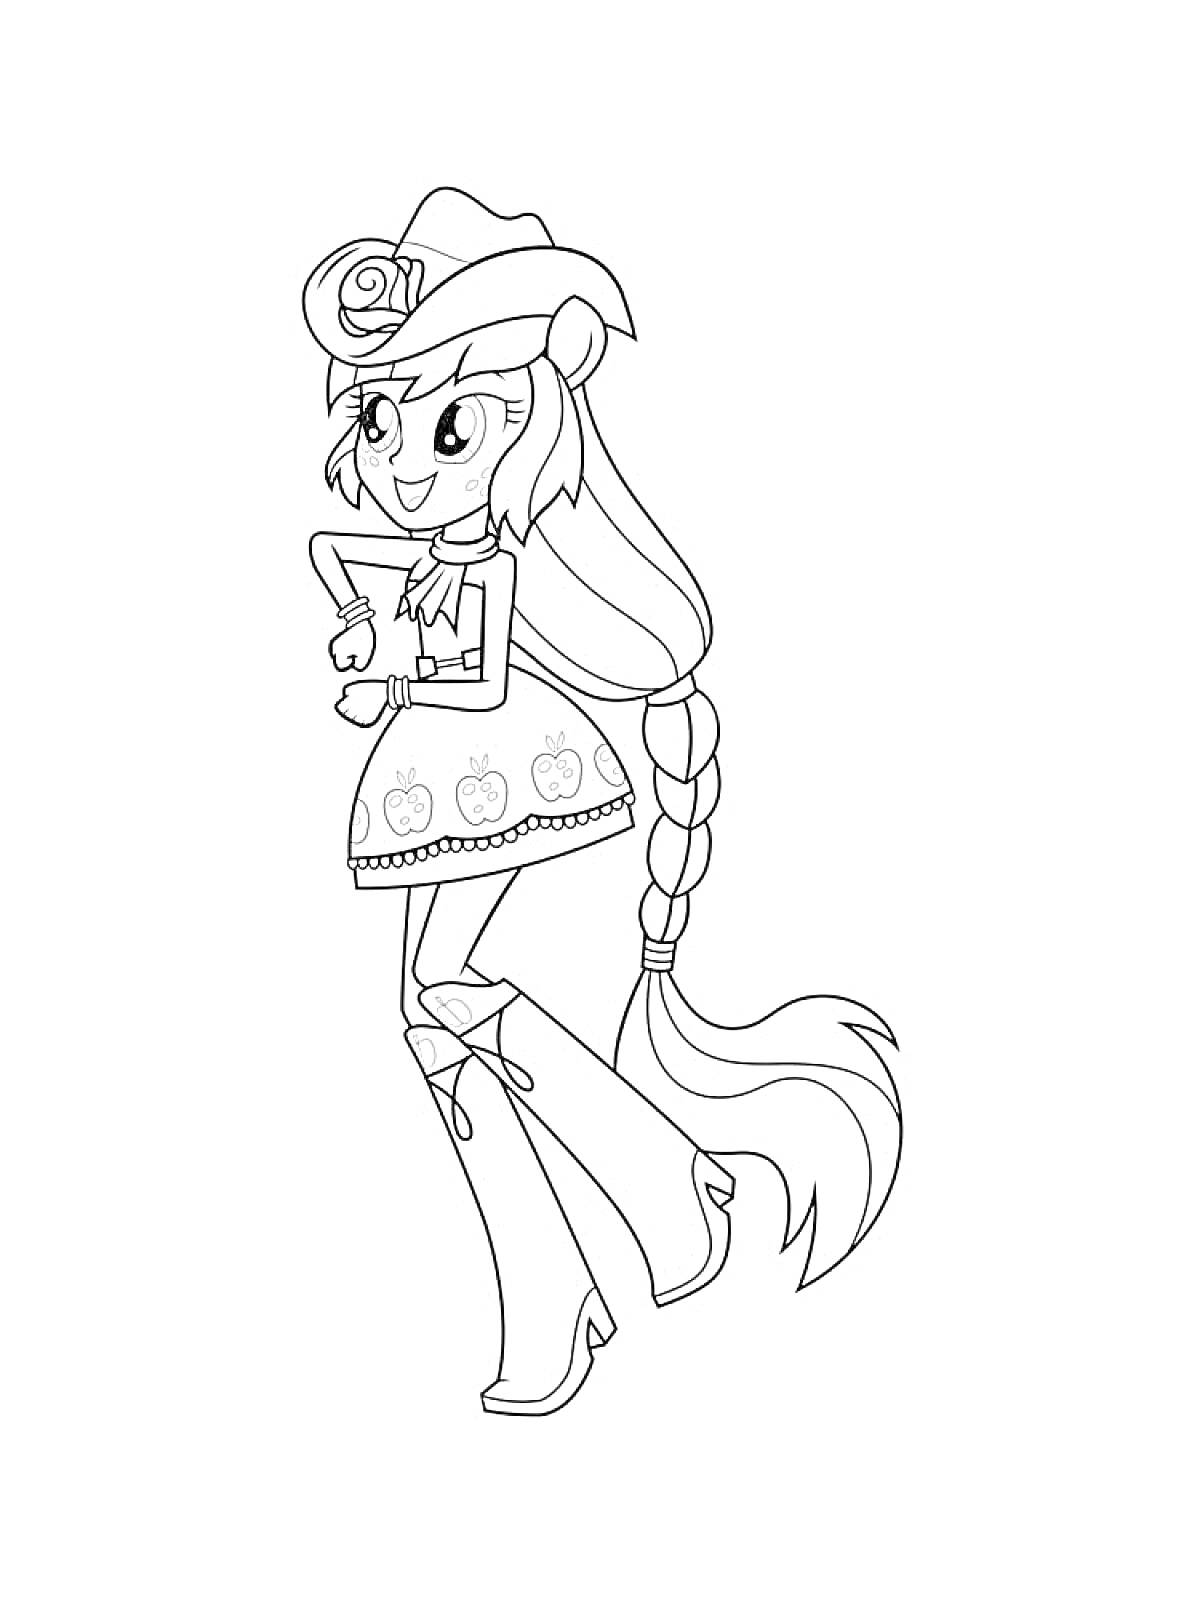 Раскраска Девушка из Эквестрии с длинной косой, в сапогах, юбке с изображениями яблок, поясом, шляпой с розой, в рубашке с длинными рукавами